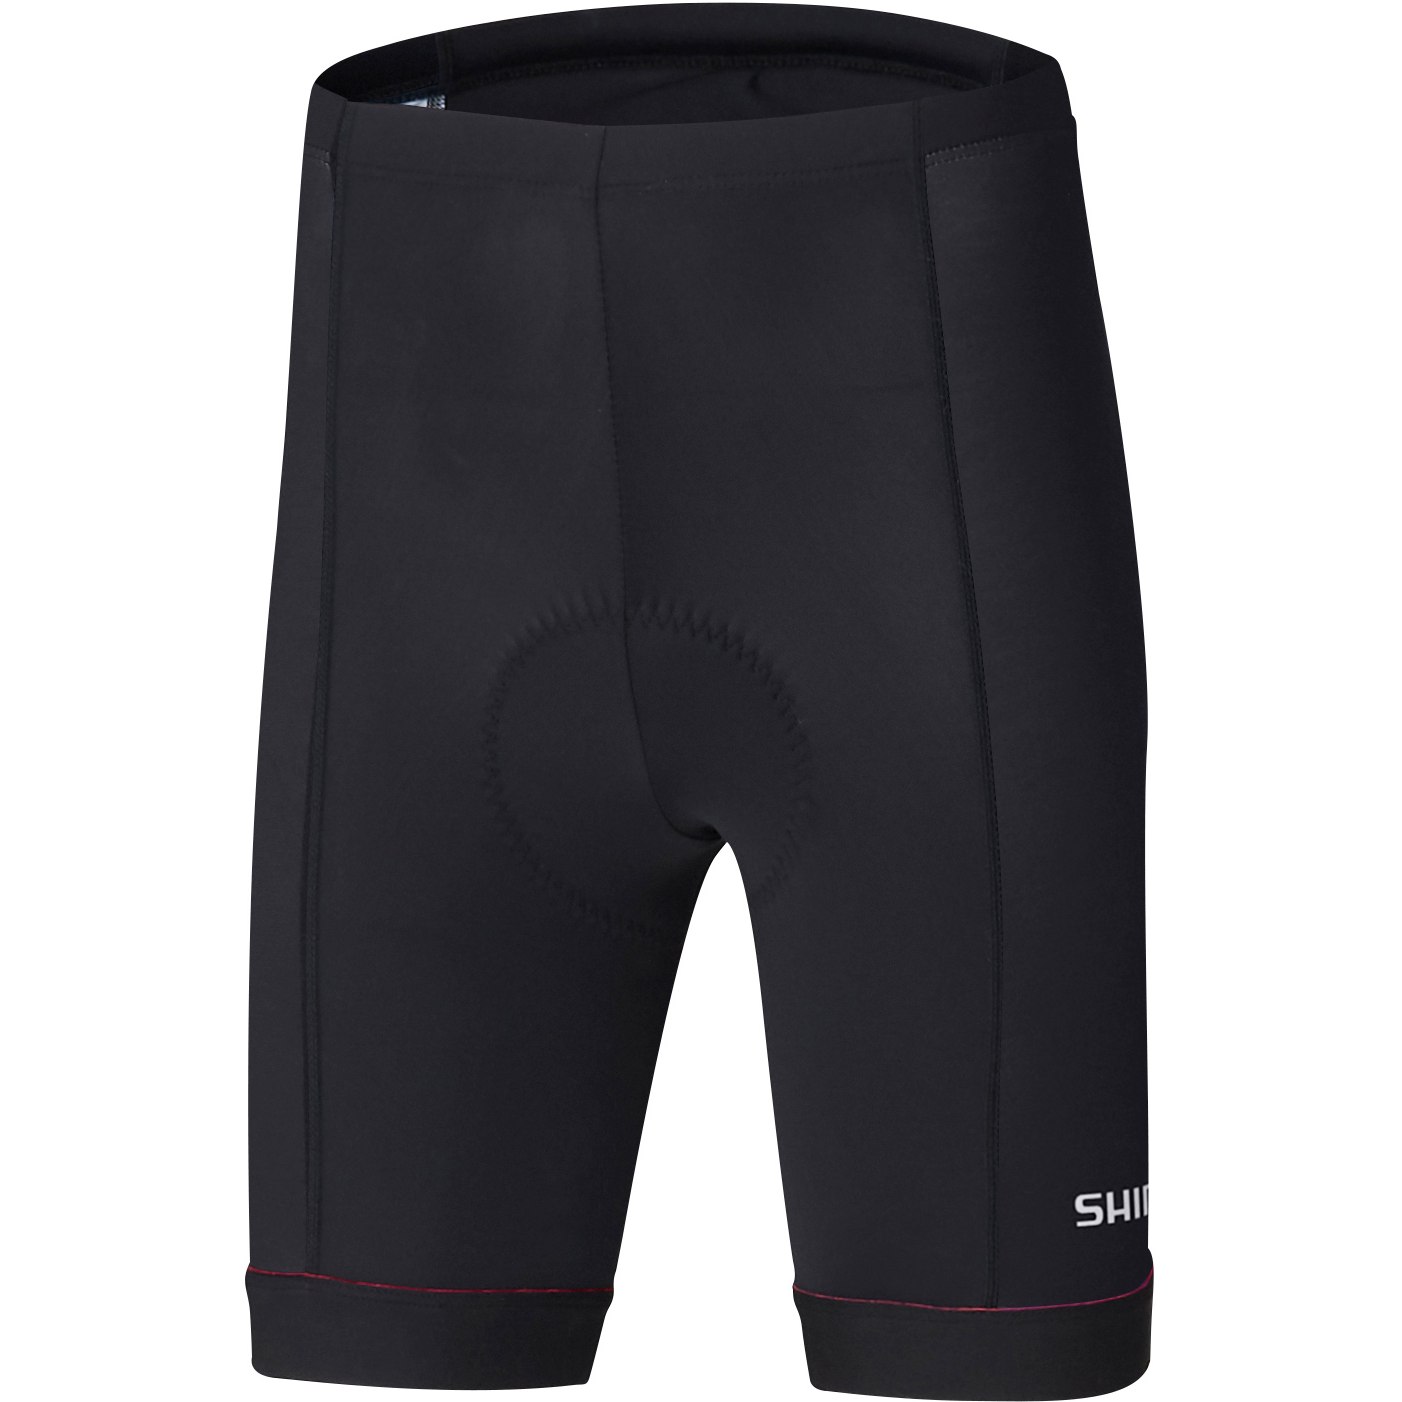 Produktbild von Shimano Junior Team Shorts - black